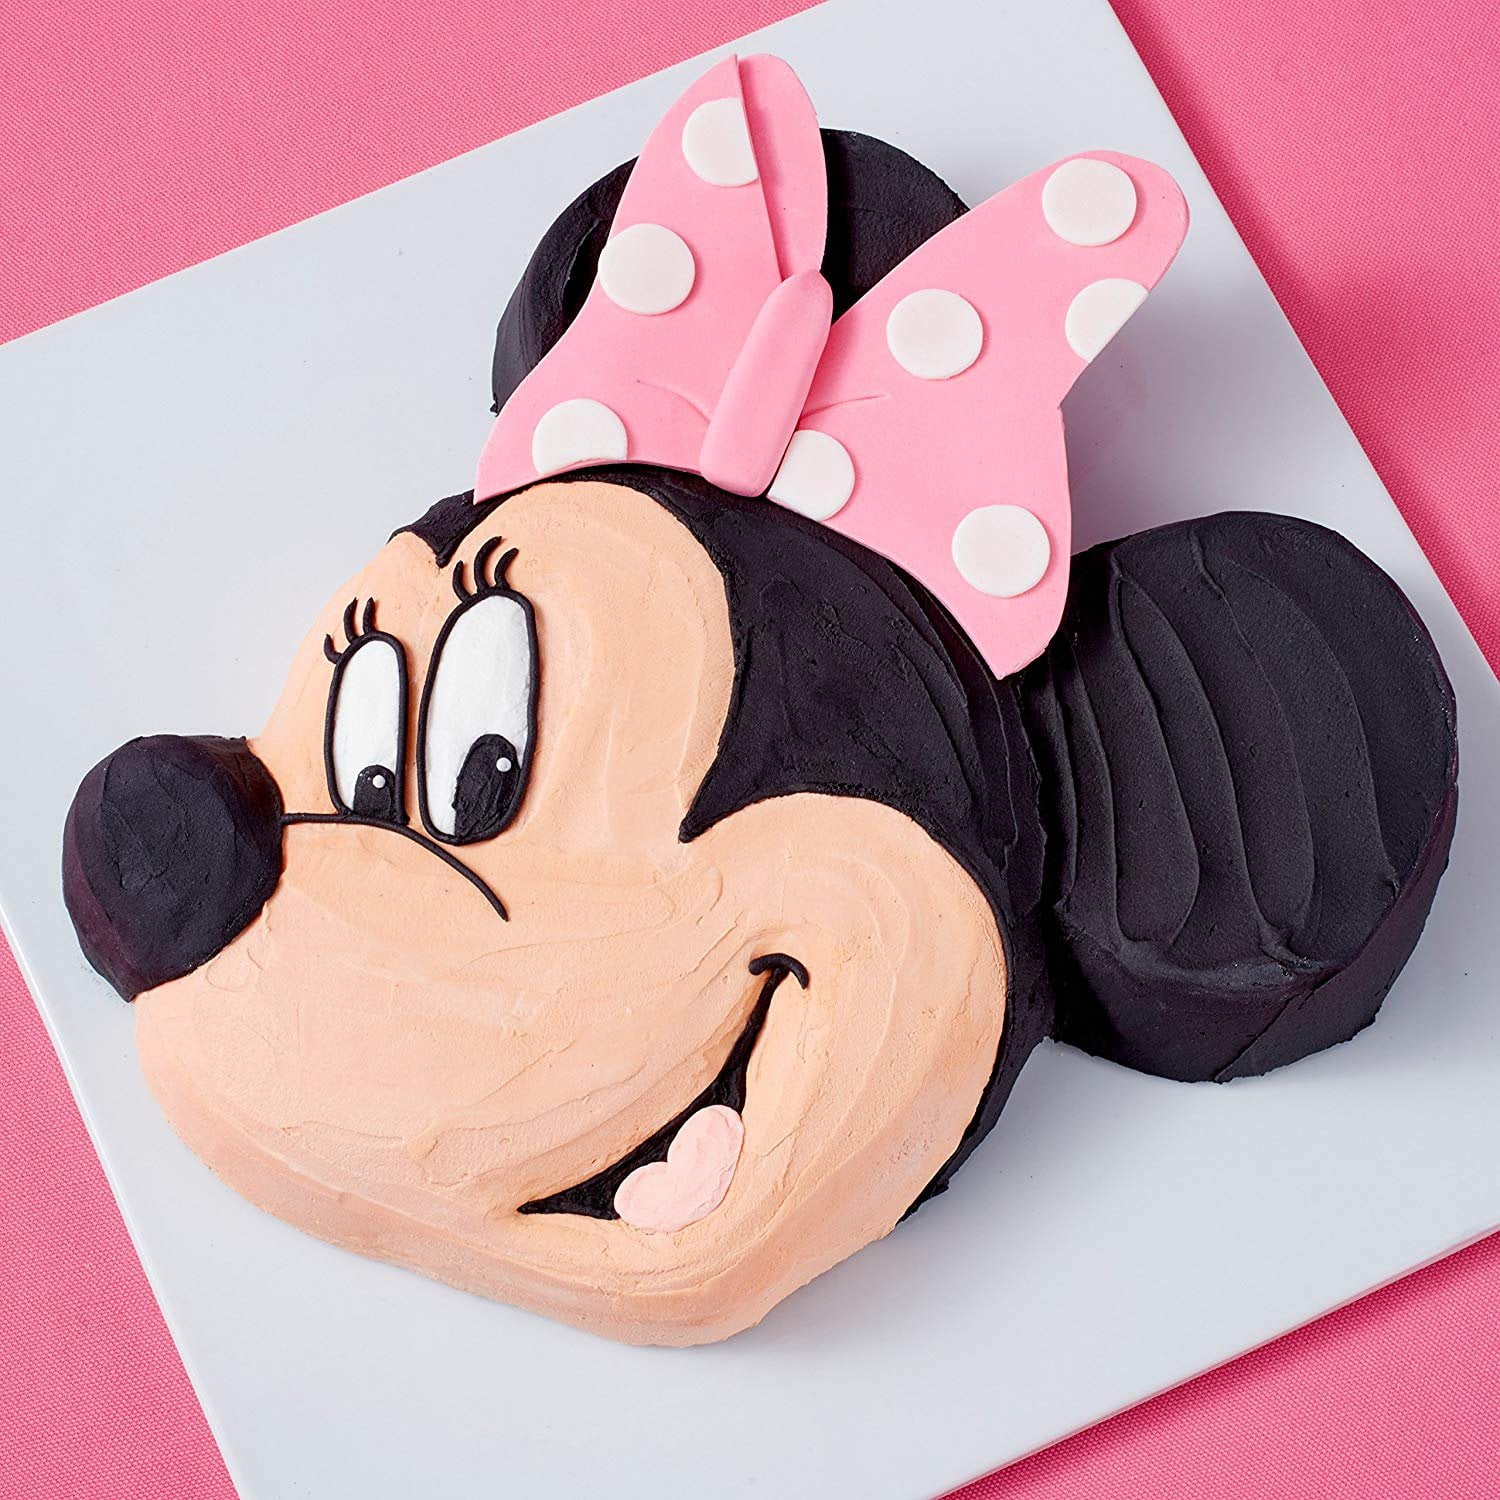 Minnie Mouse Cake - Wilton